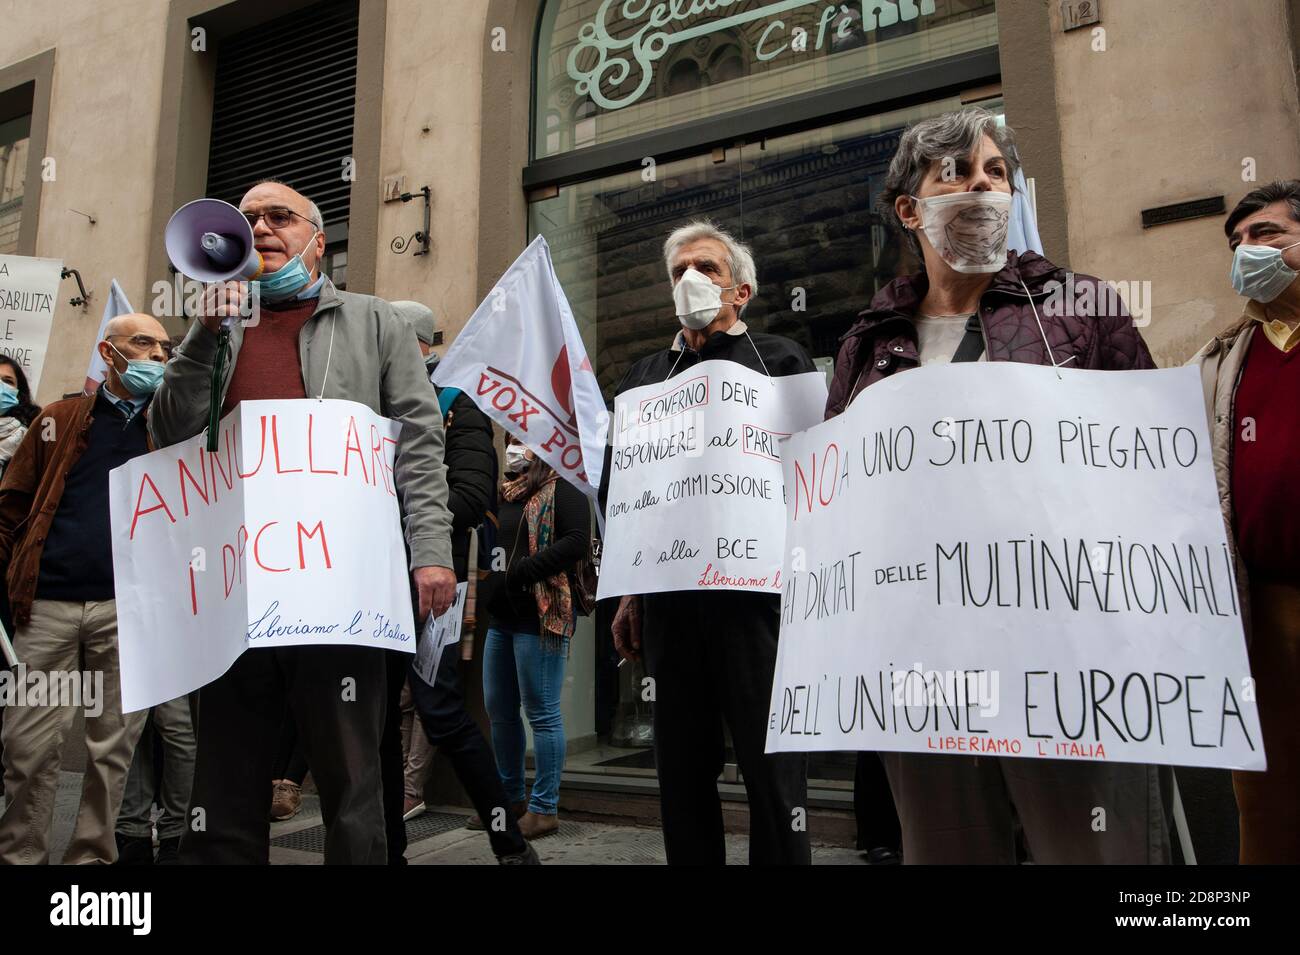 Firenze, Italia - 2020 ottobre 31: Persone con cartelli e manifesti in pubblico dimostrazione. Protestare per la restrizione delle libertà durante il Covid-19 Foto Stock